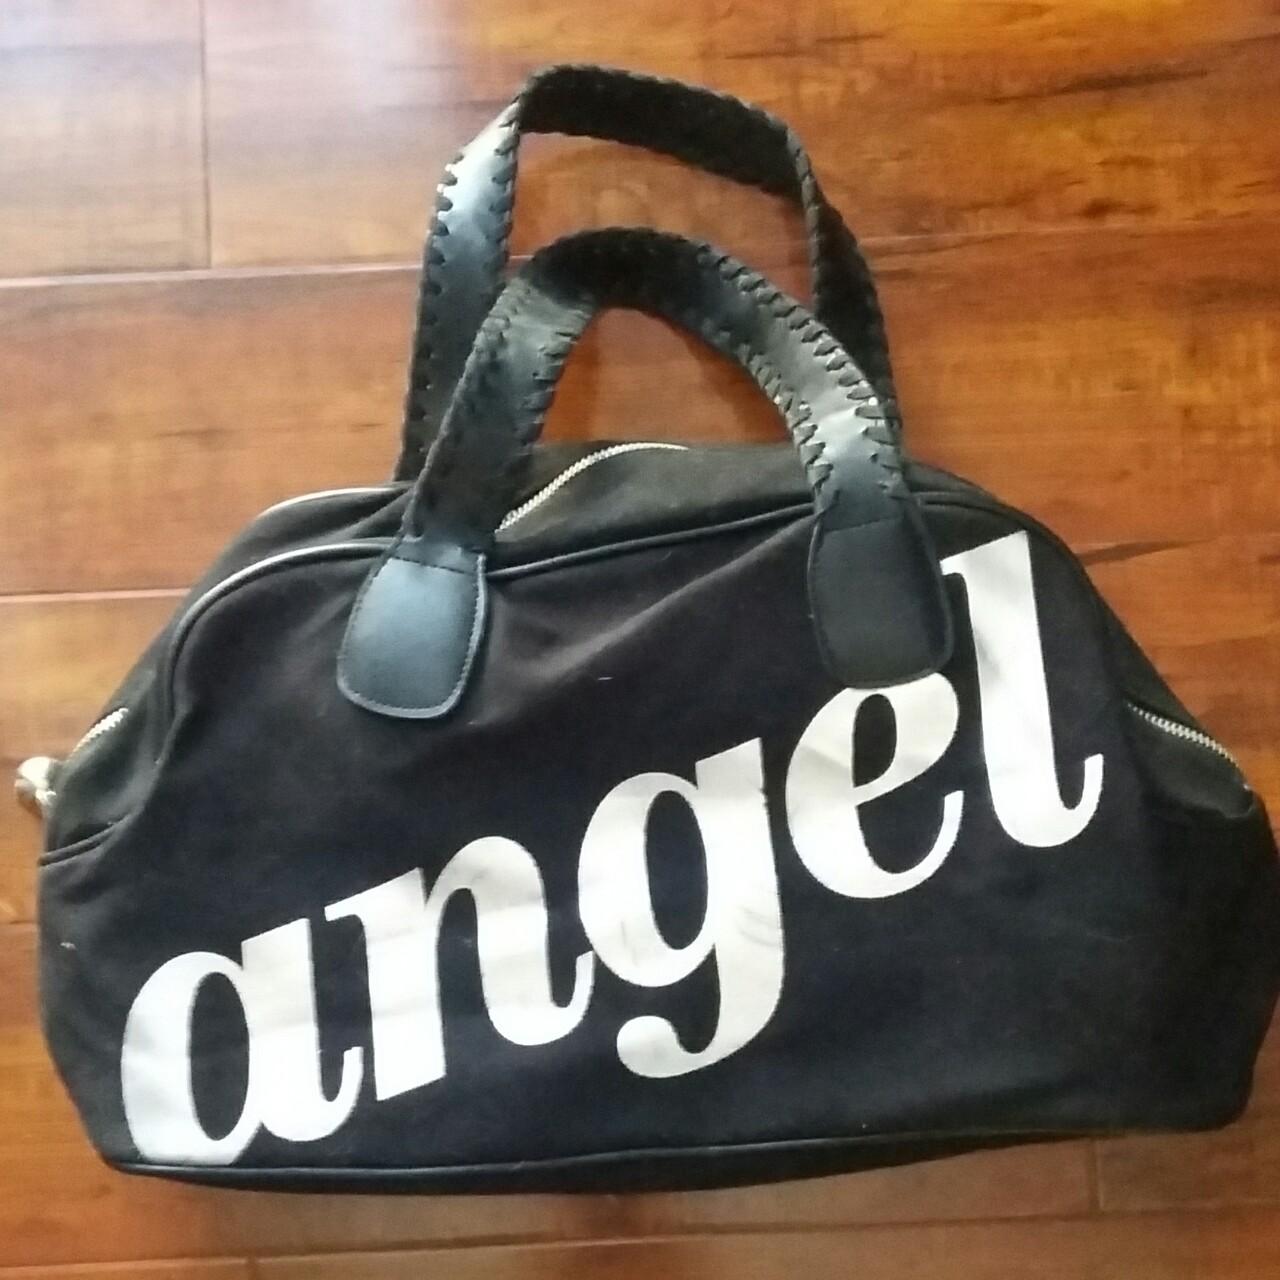 Black VS angel bag Brand is Victoria's Secret. - Depop